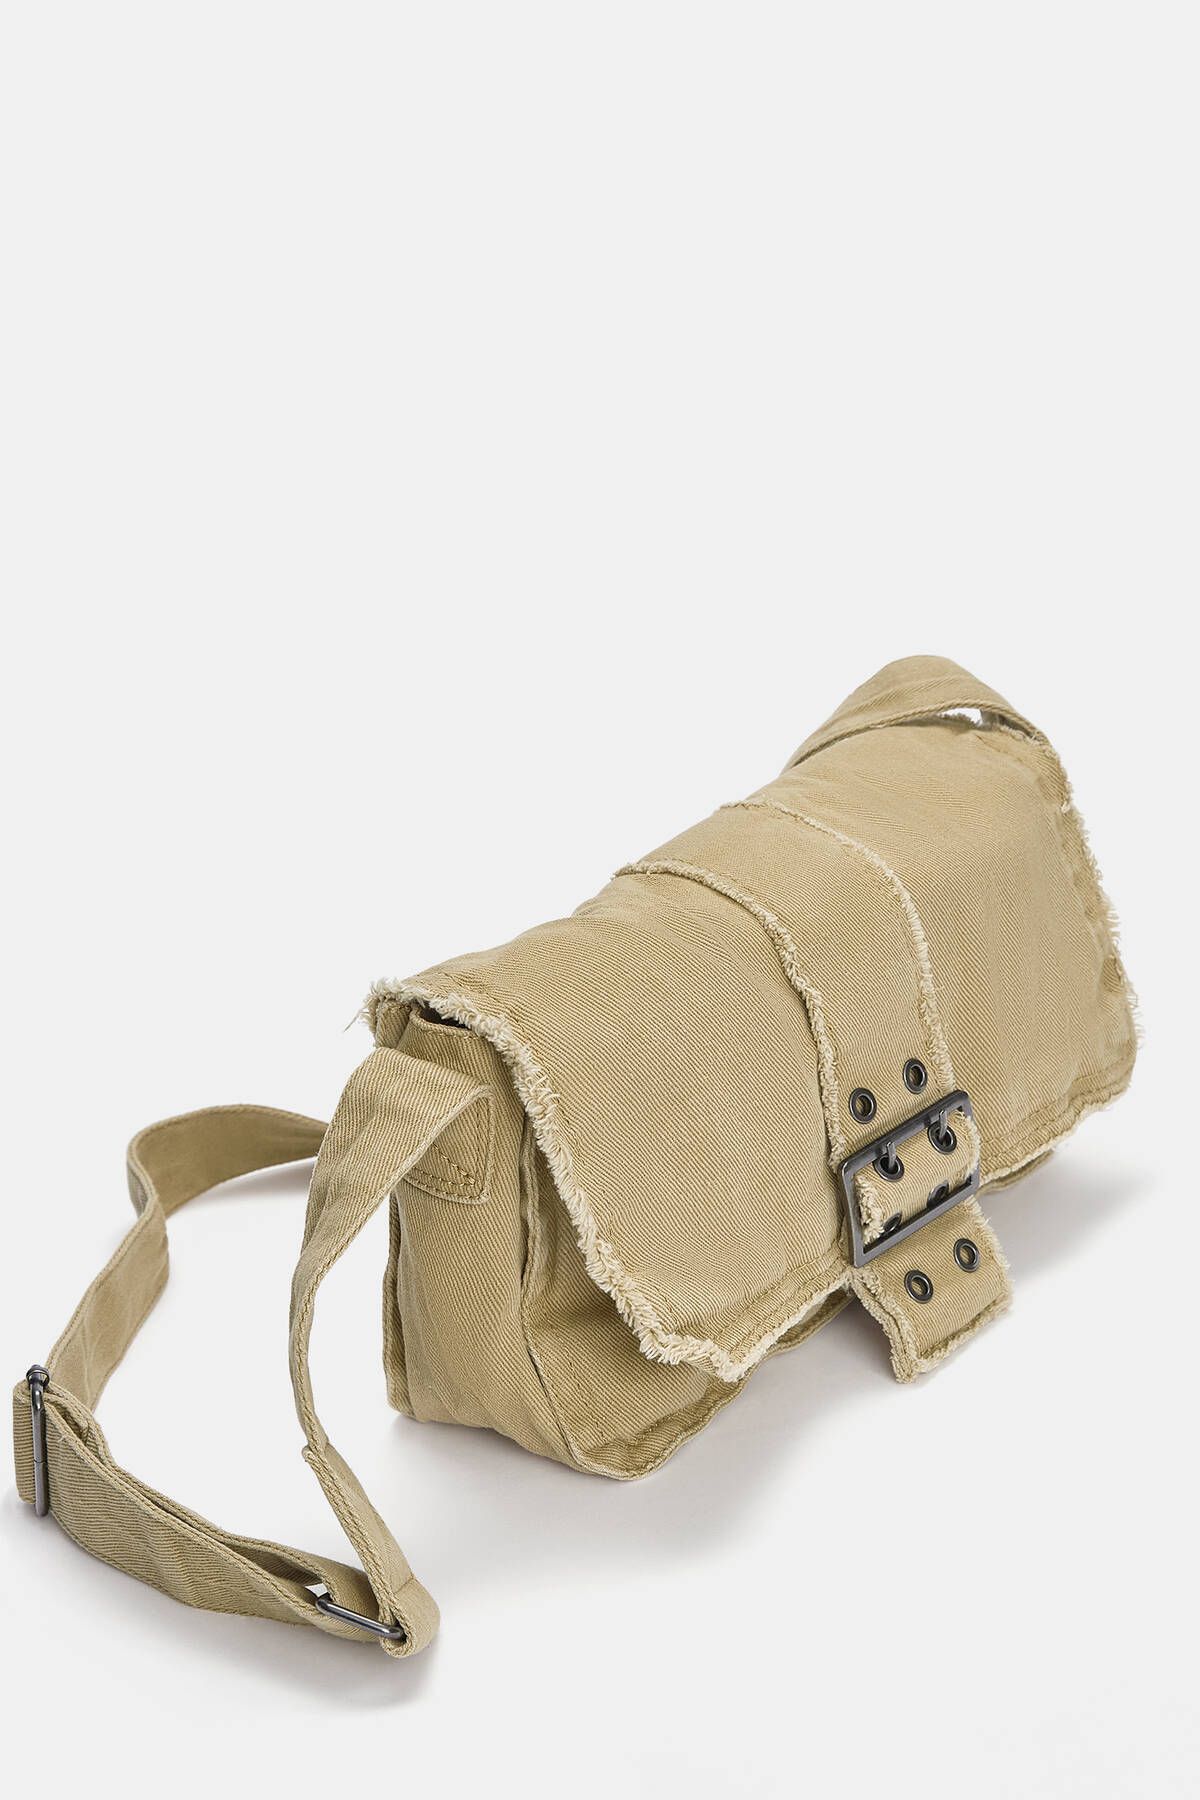 Pull & Bear Distressed görünümlü kanvas çapraz askılı çanta